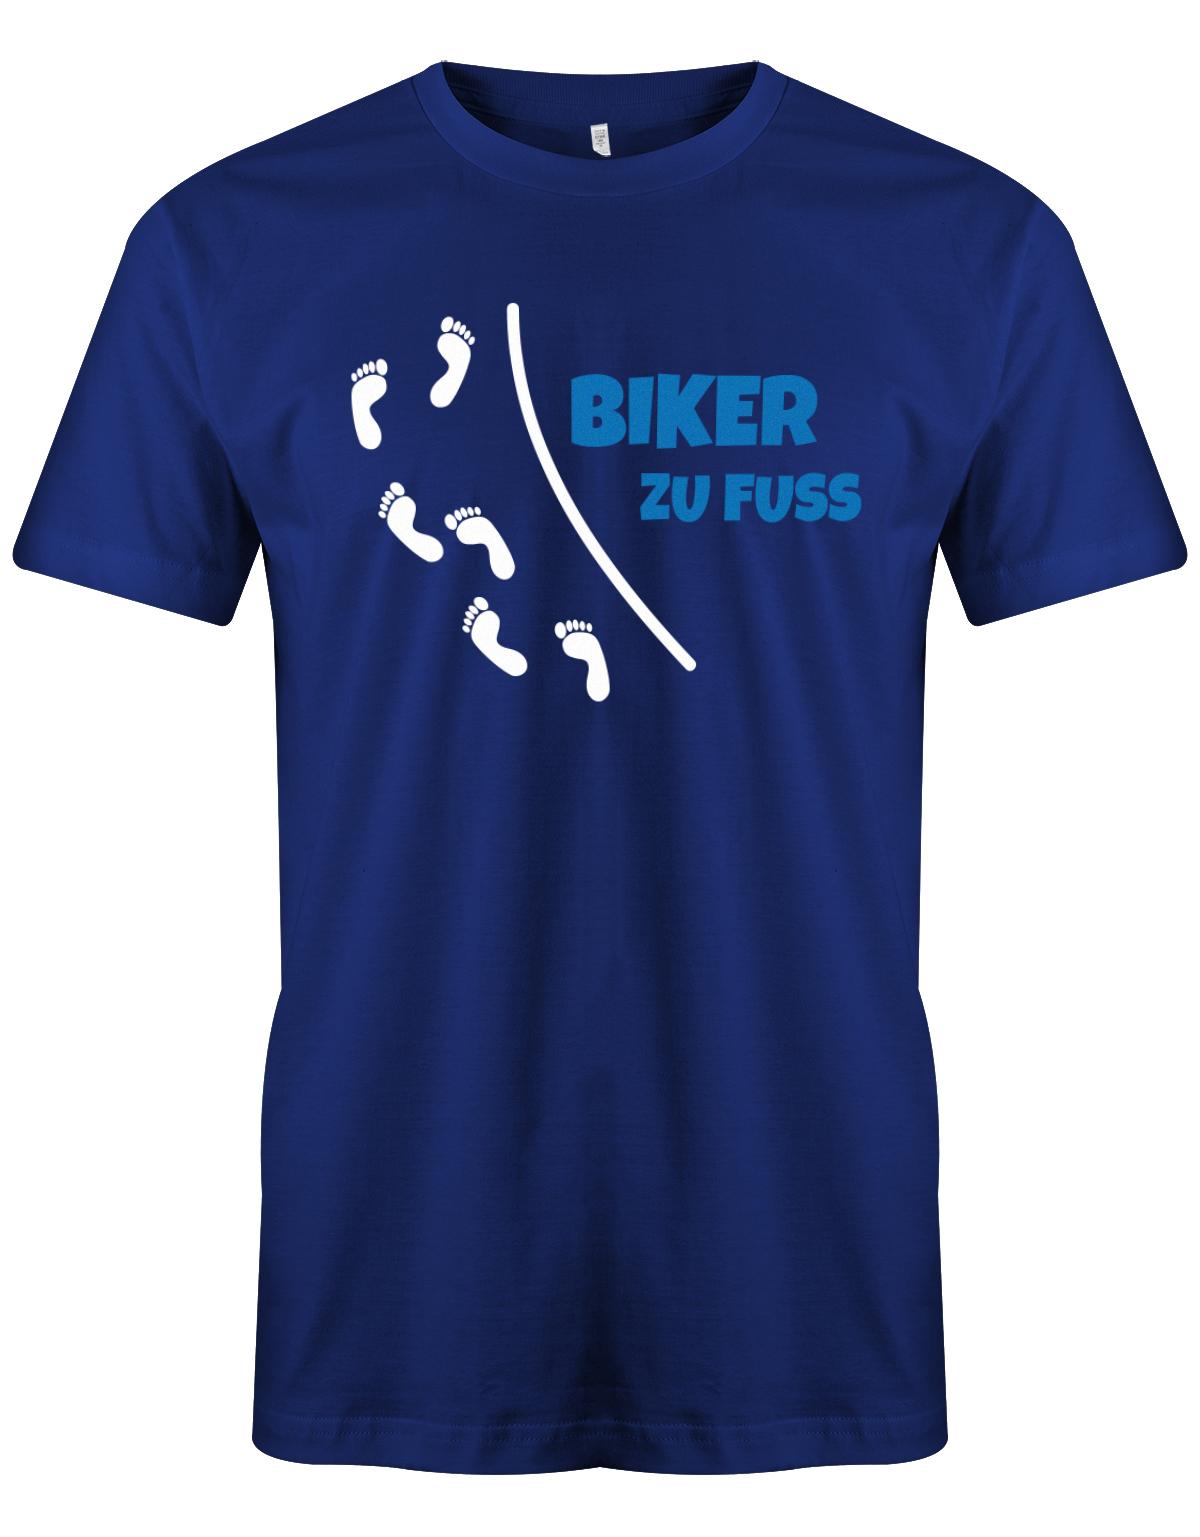 Biker-Zu-Fuss-Herren-Shirt-Royalblau